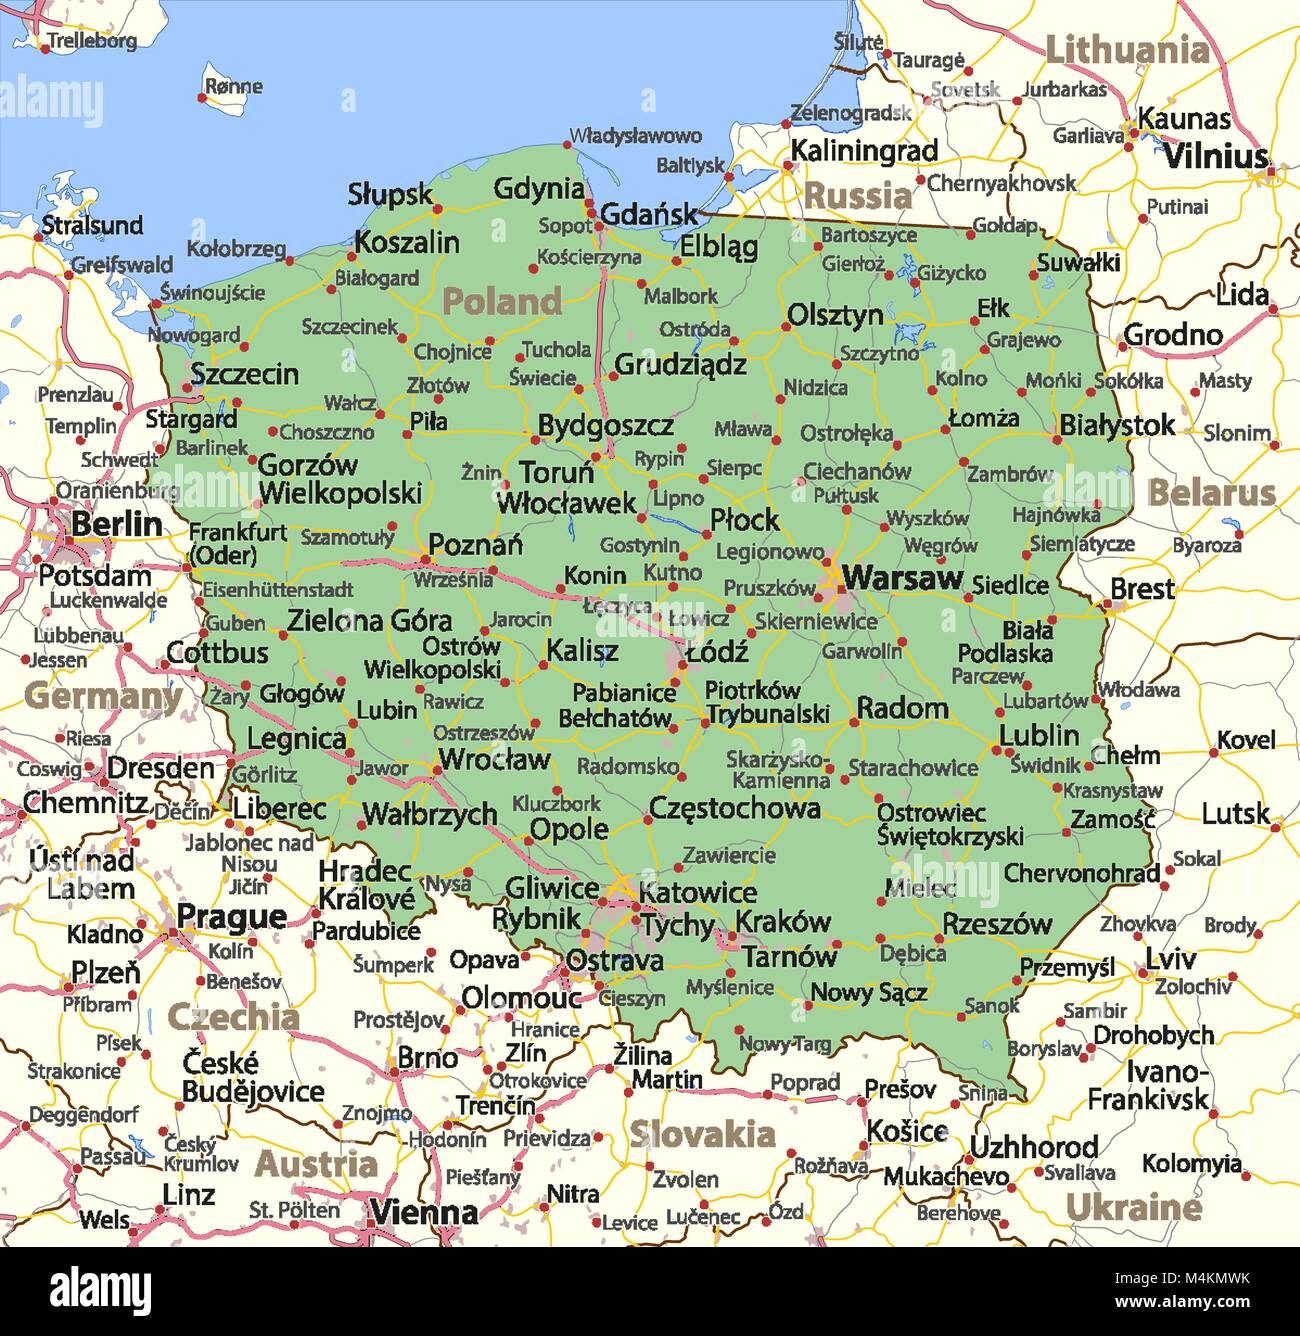 Mapa de Polonia. Muestra las fronteras de los países, las zonas urbanas, los nombres de lugares y caminos. Etiquetas en inglés cuando sea posible. Proyección: Mercator. Ilustración del Vector